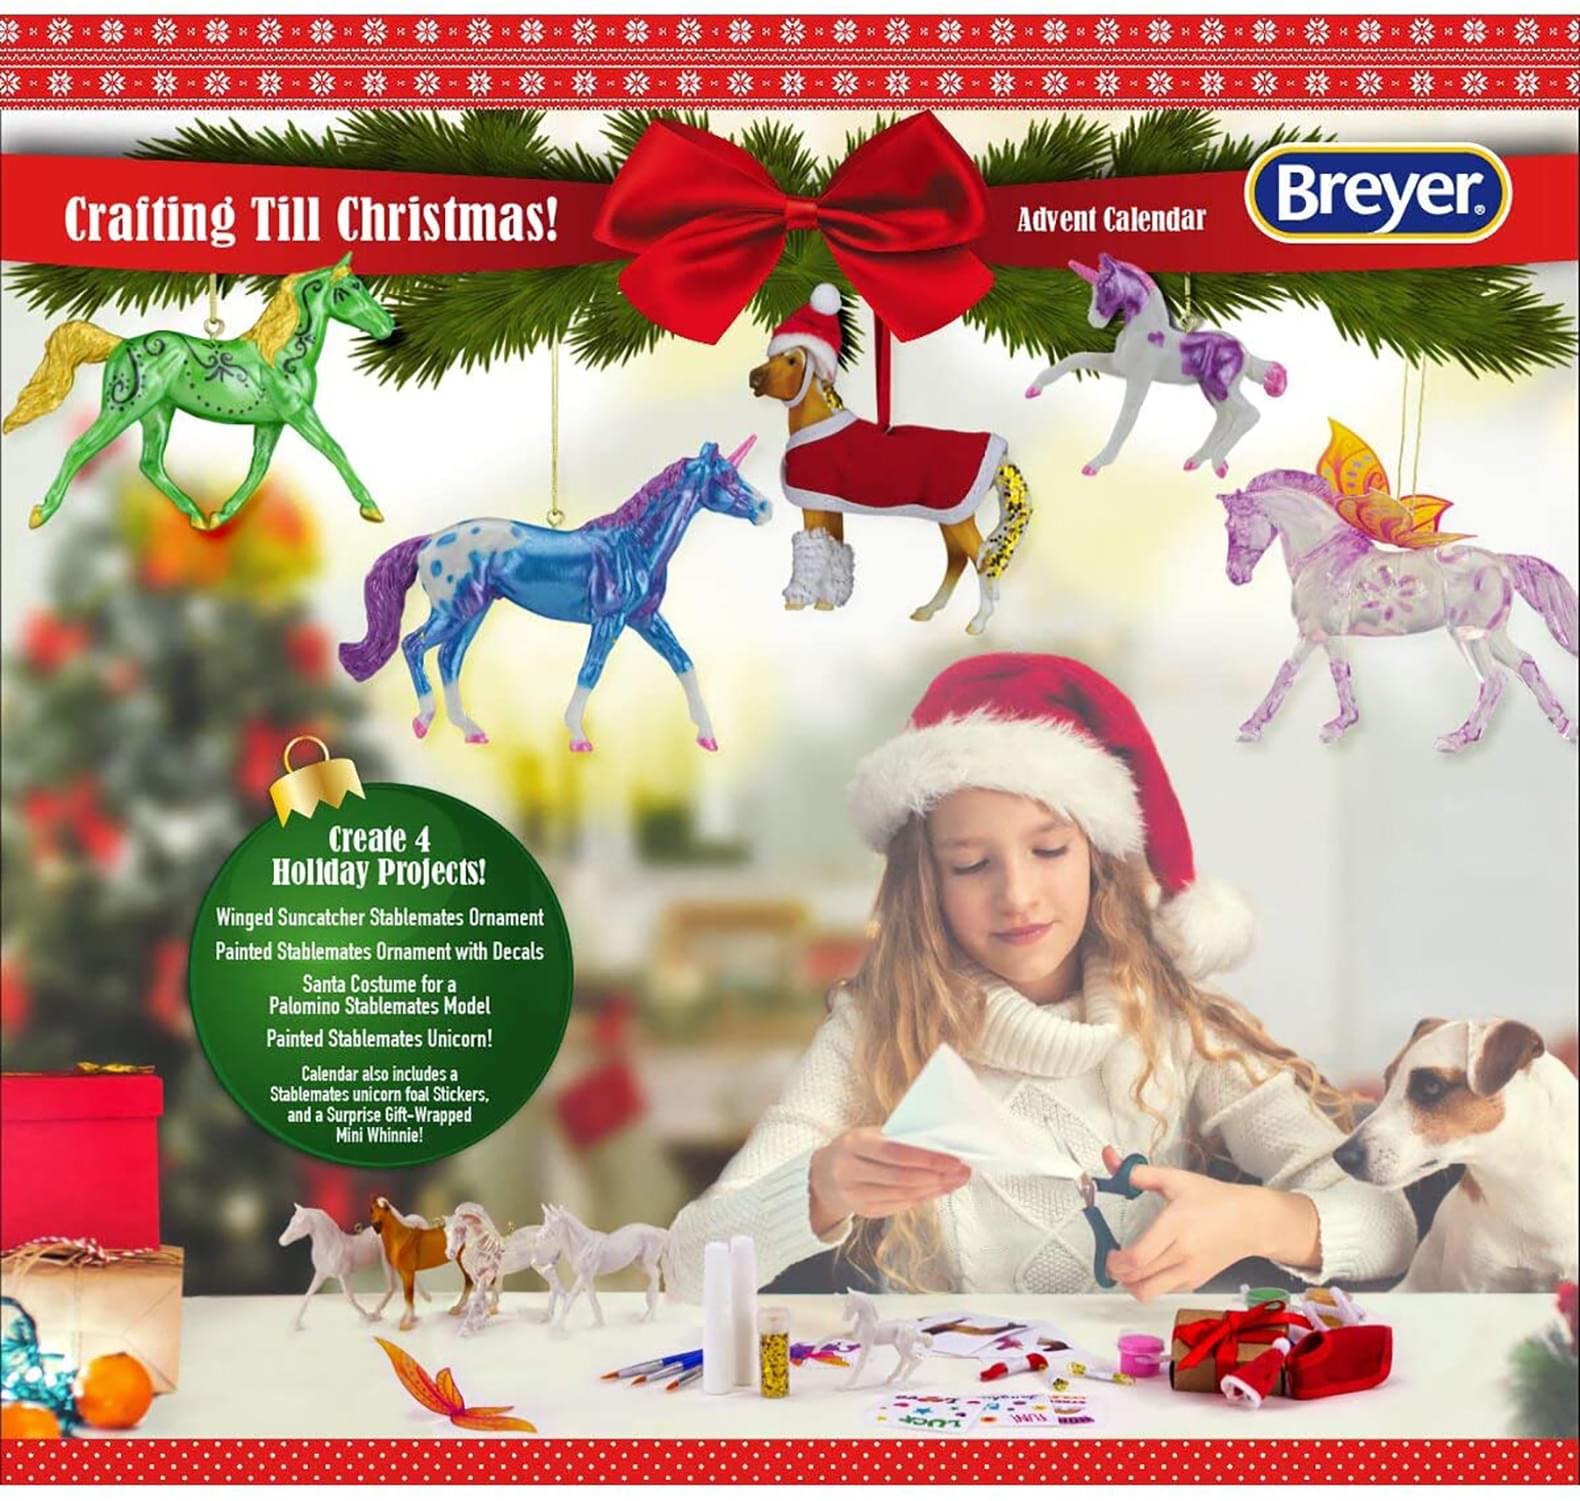 Breyer Crafting til Christmas Advent Calendar